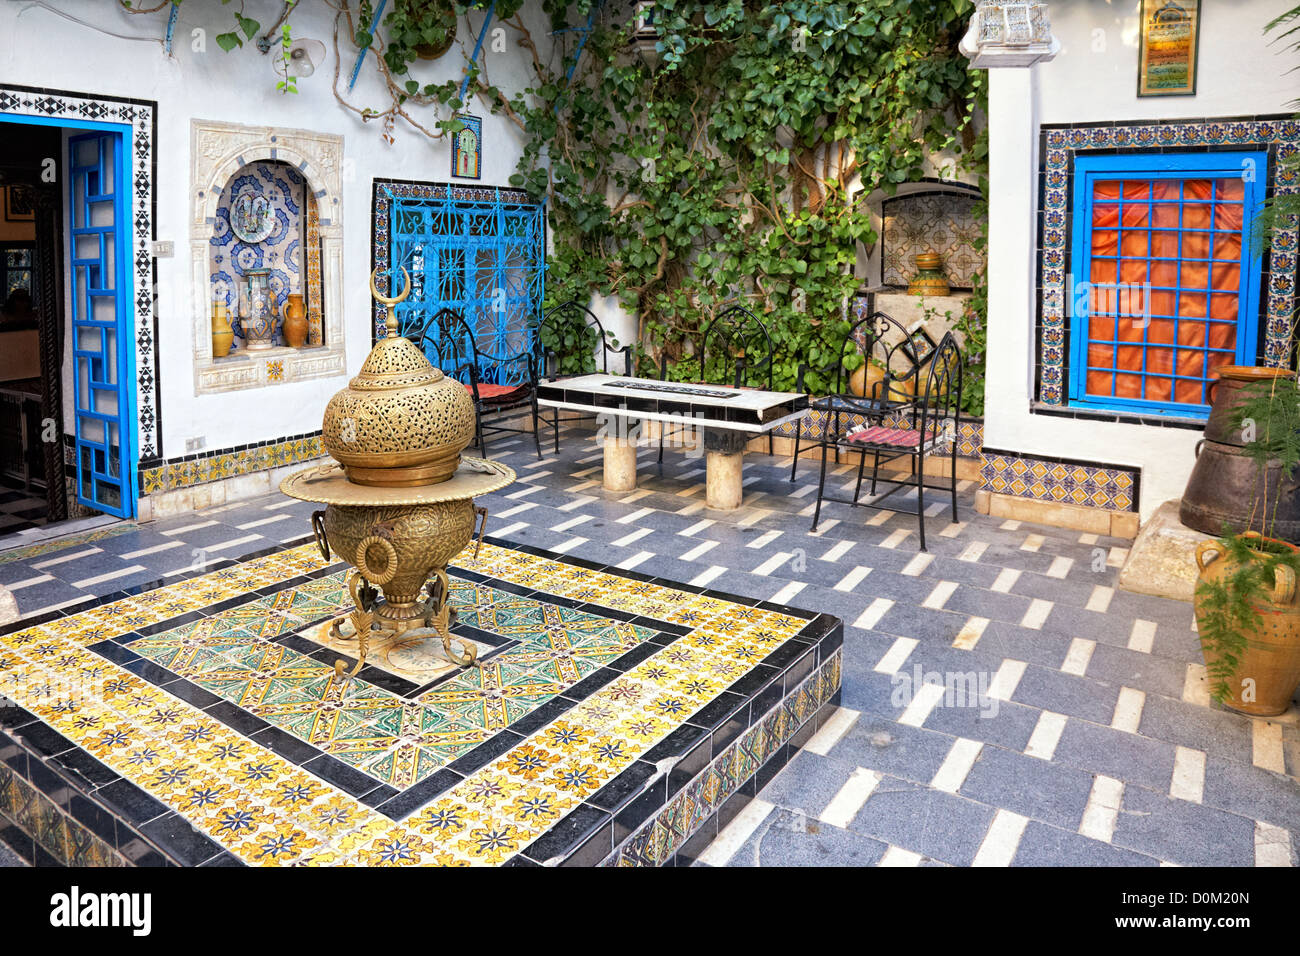 traditional courtyard at Sidi Bou Said, Tunis, Tunisia Stock Photo